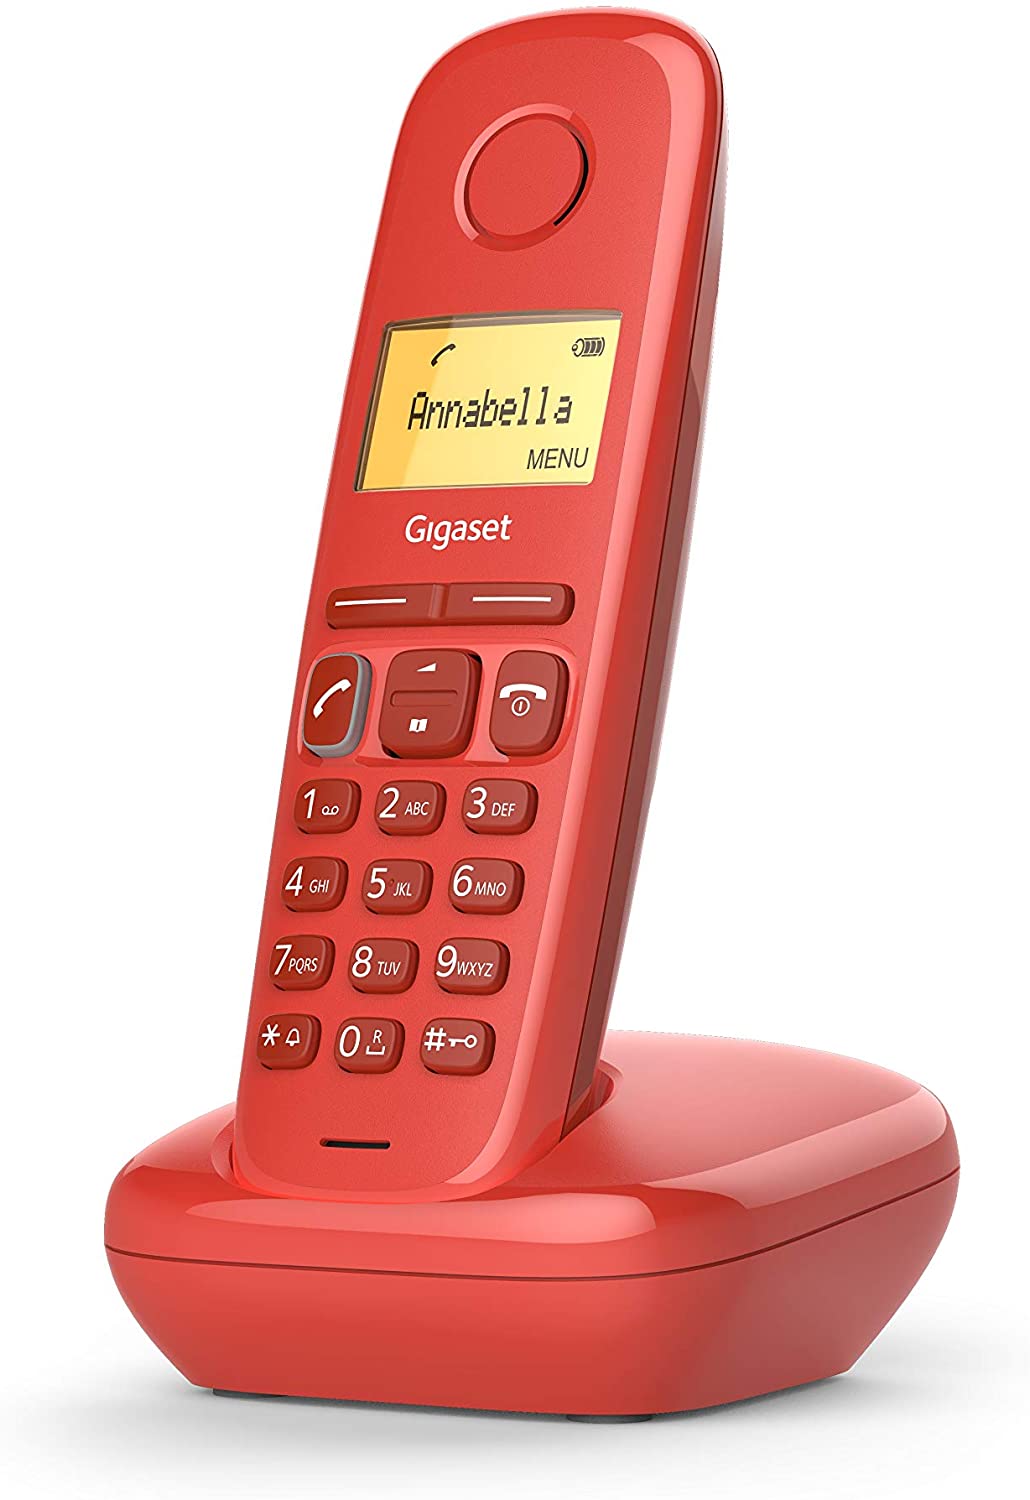 Gigaset A170 Telefono Inalambrico Dect con Identificador de Llamadas - Bloqueo de Teclado - Control 